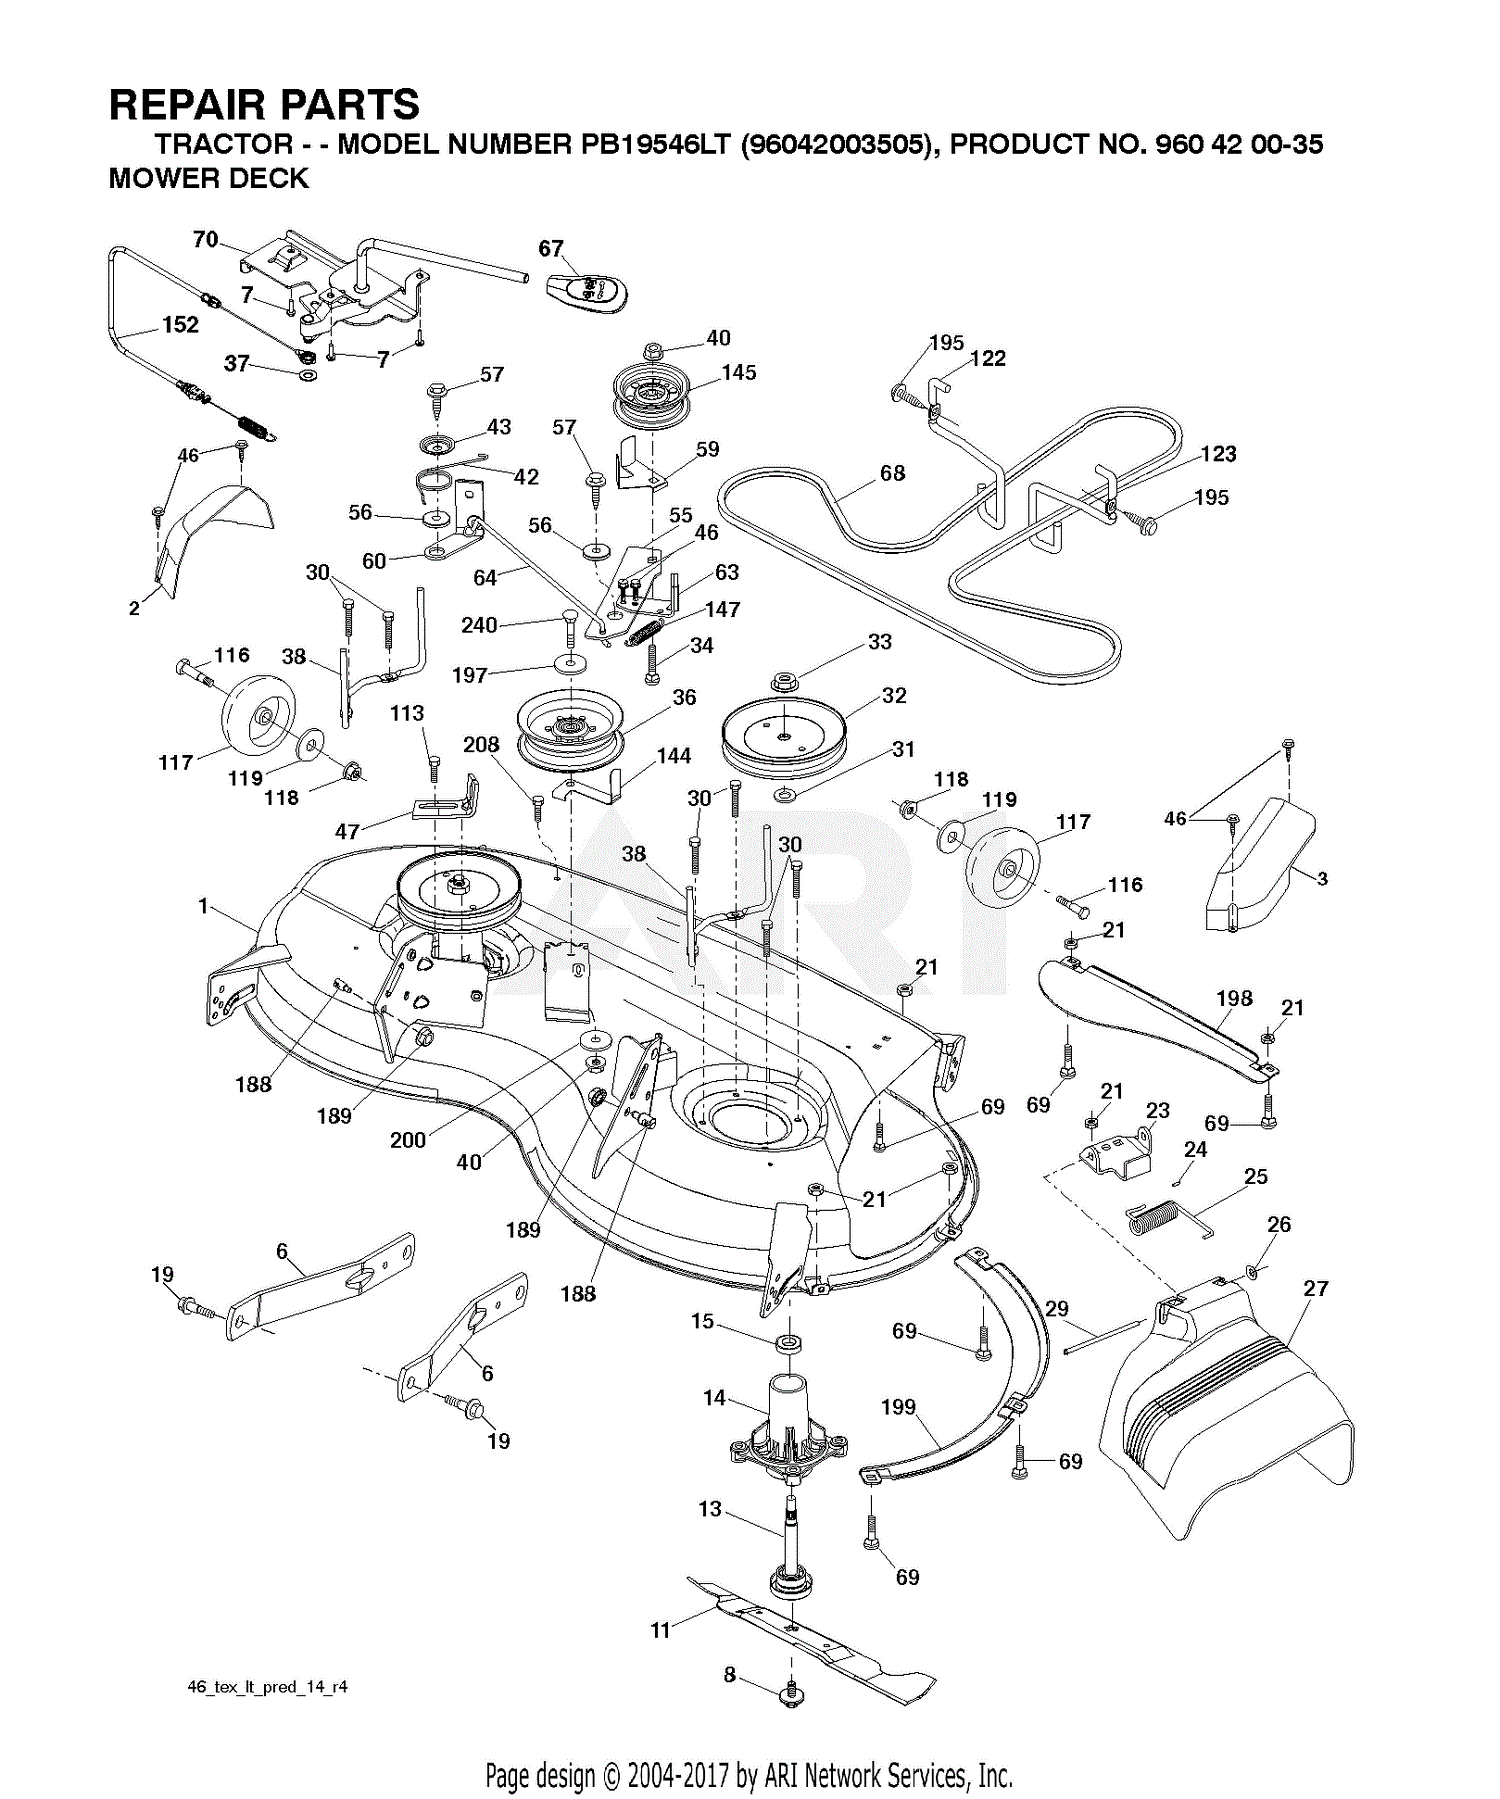 Poulan Riding Lawn Mower Parts Diagram - Free Wiring Diagram